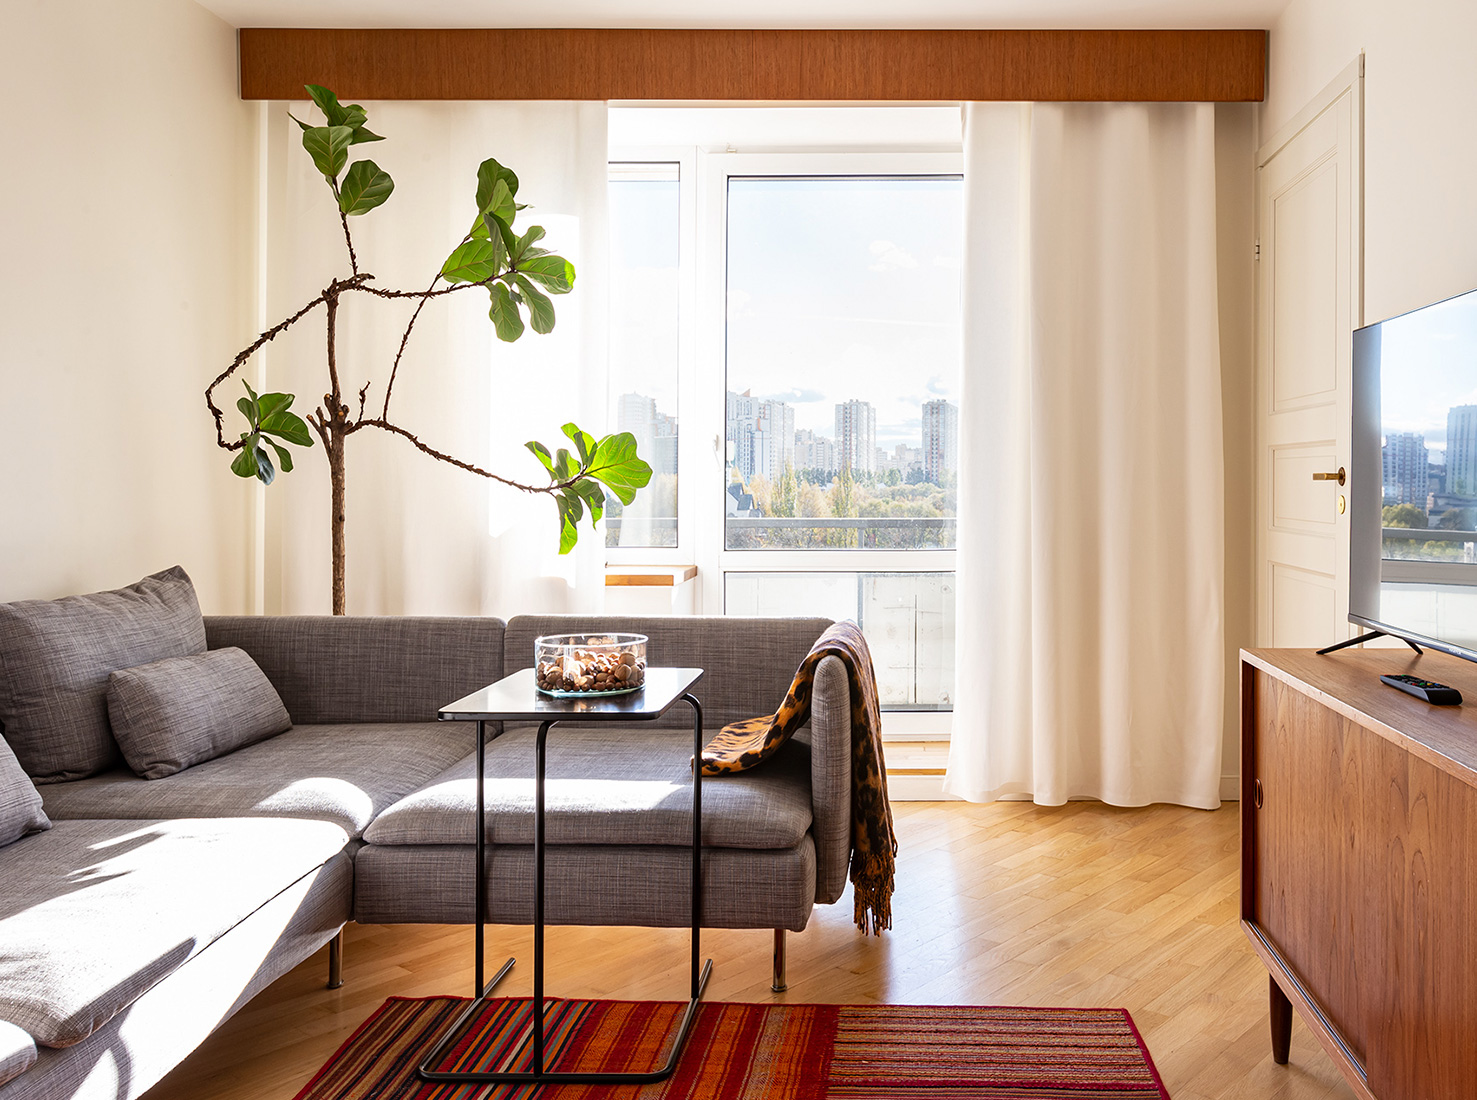 Портфолио: фото дизайн интерьера квартиры примеры от компании Уровень